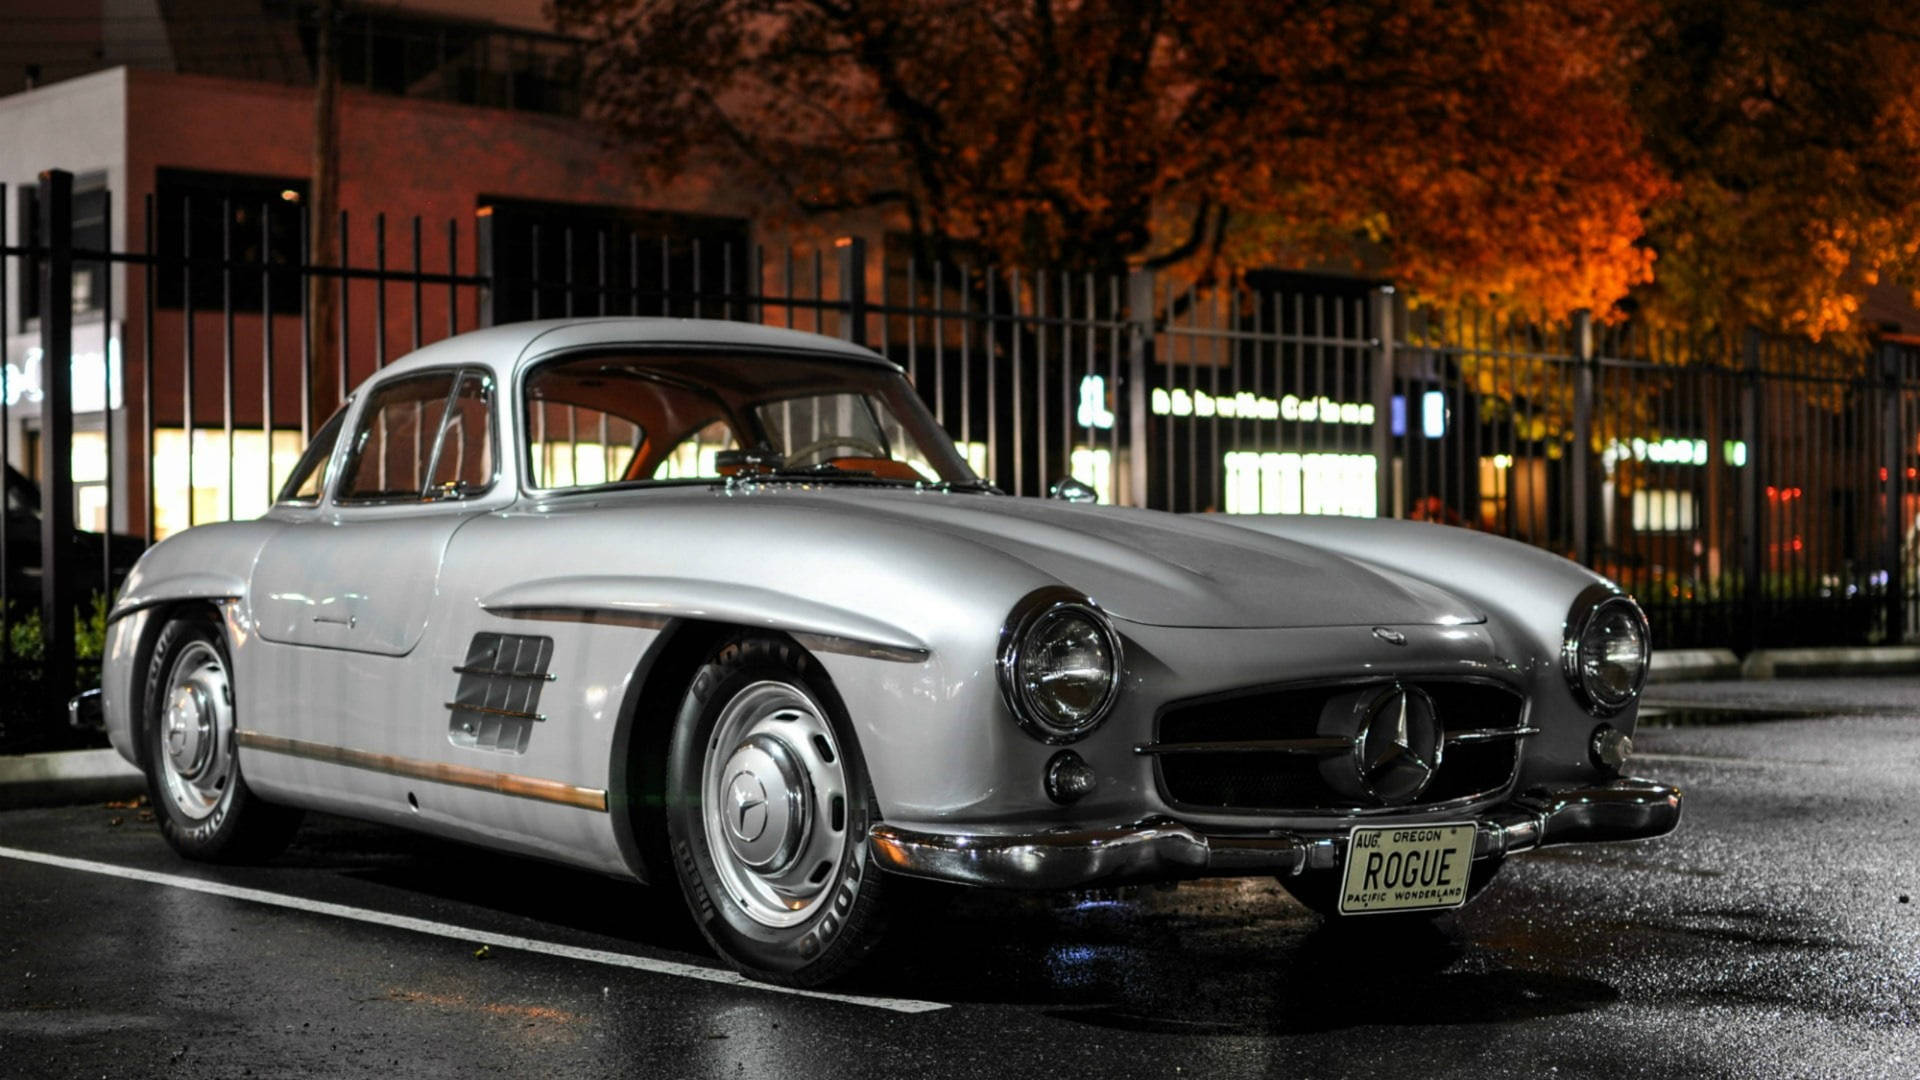 Silver Vintage Mercedes Benz Car Background